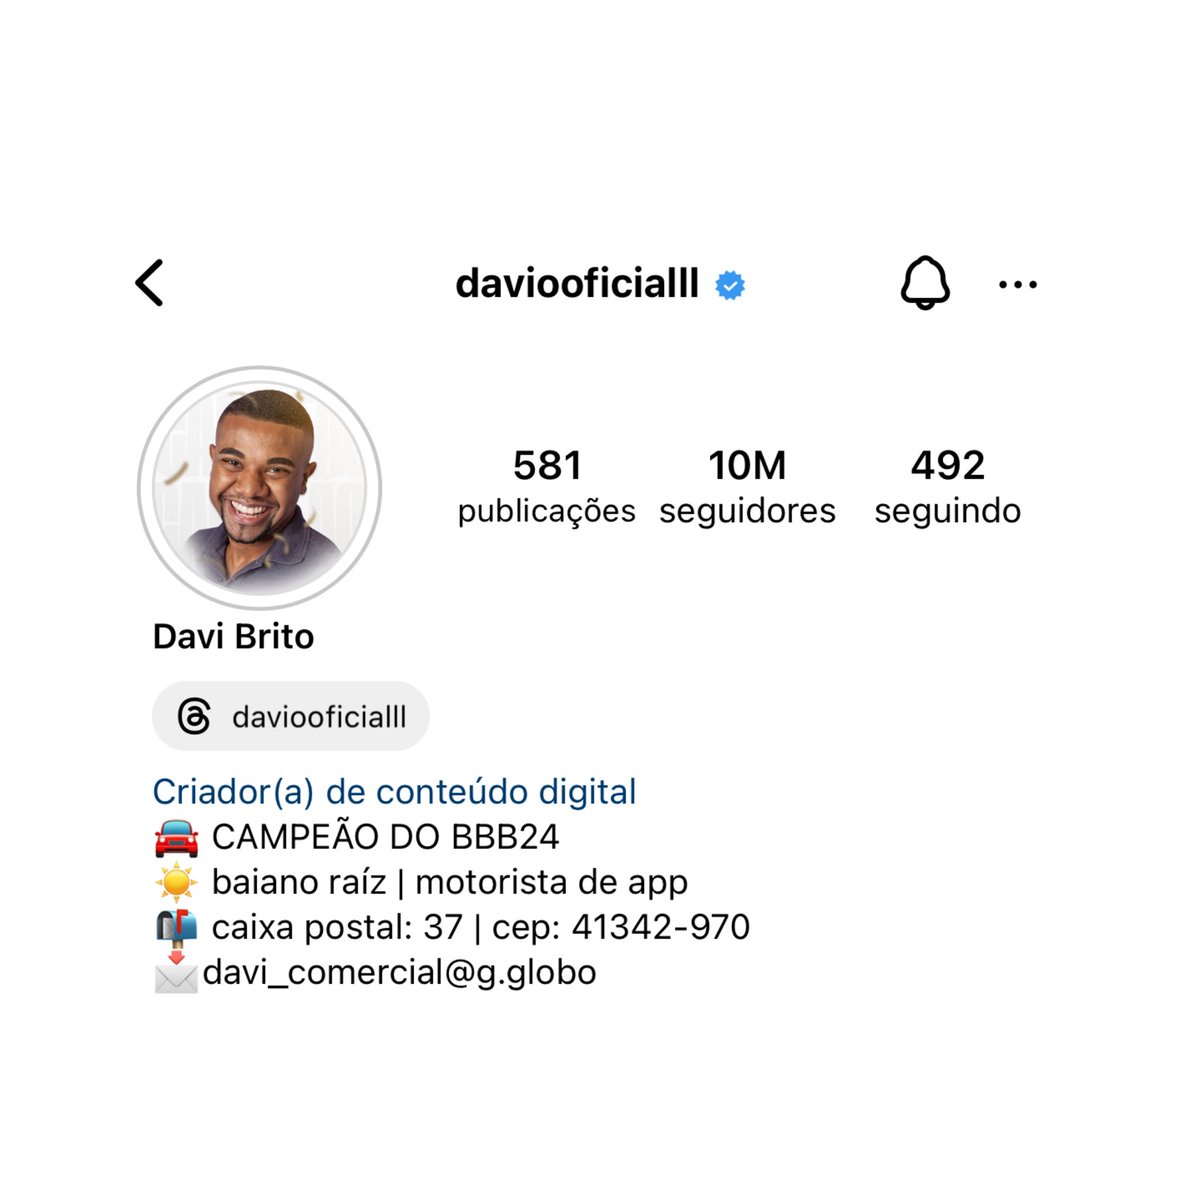 Dez milhões do Davi no instagram. O homem não para de crescer 🚀